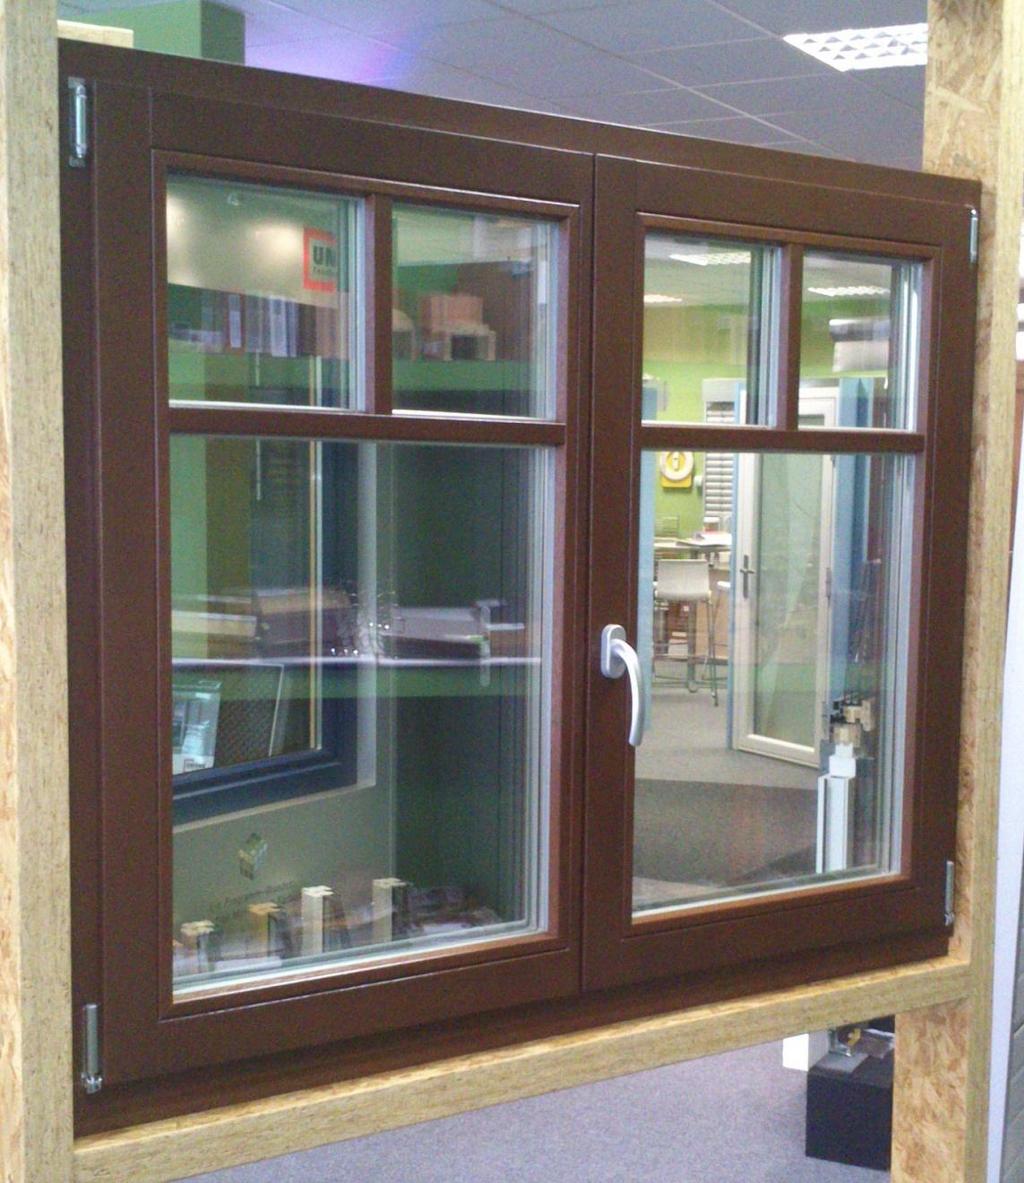 19 Dvoukřídlé eurookno dvoukřídlé dřevěné okno IV84 otvíravé, sklápěcí pravé (mikroventilace), otvíravé levé, bez sloupku rozměr: 1343 x 1095 mm